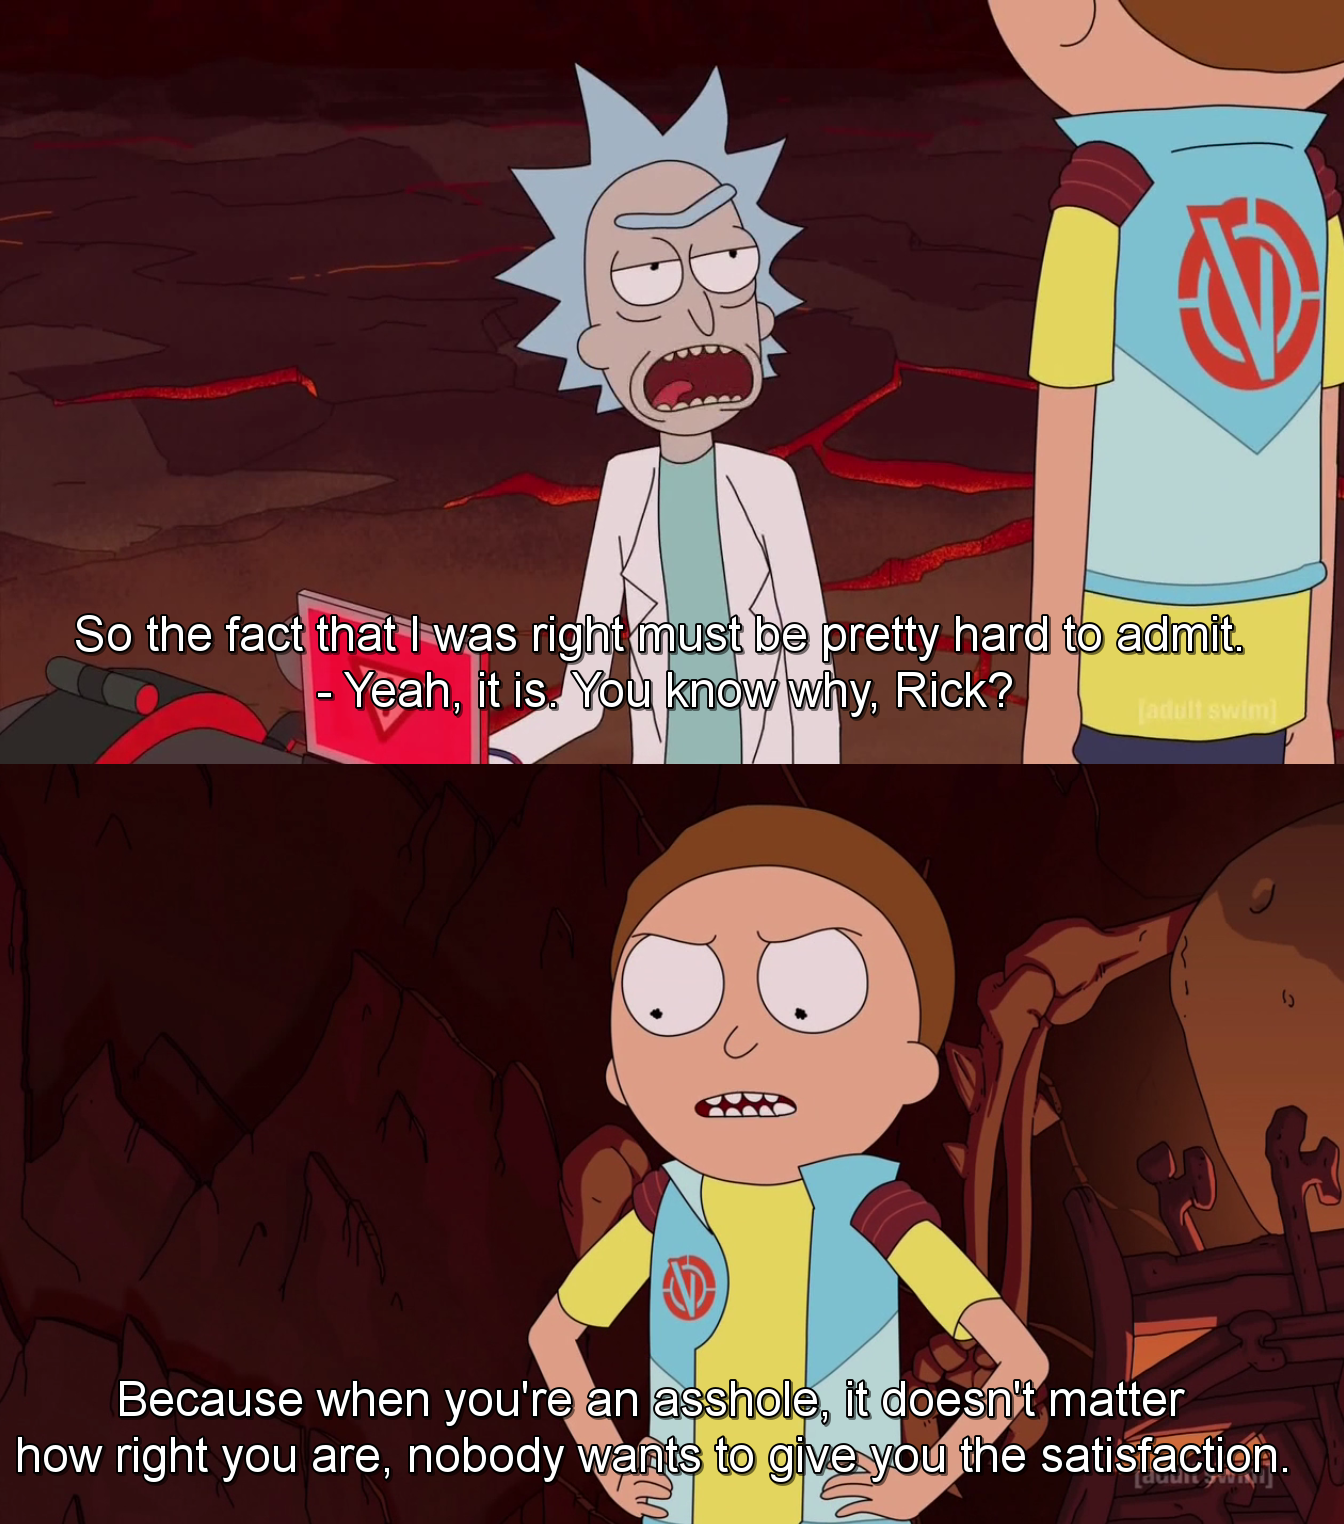 Rick is an asshole